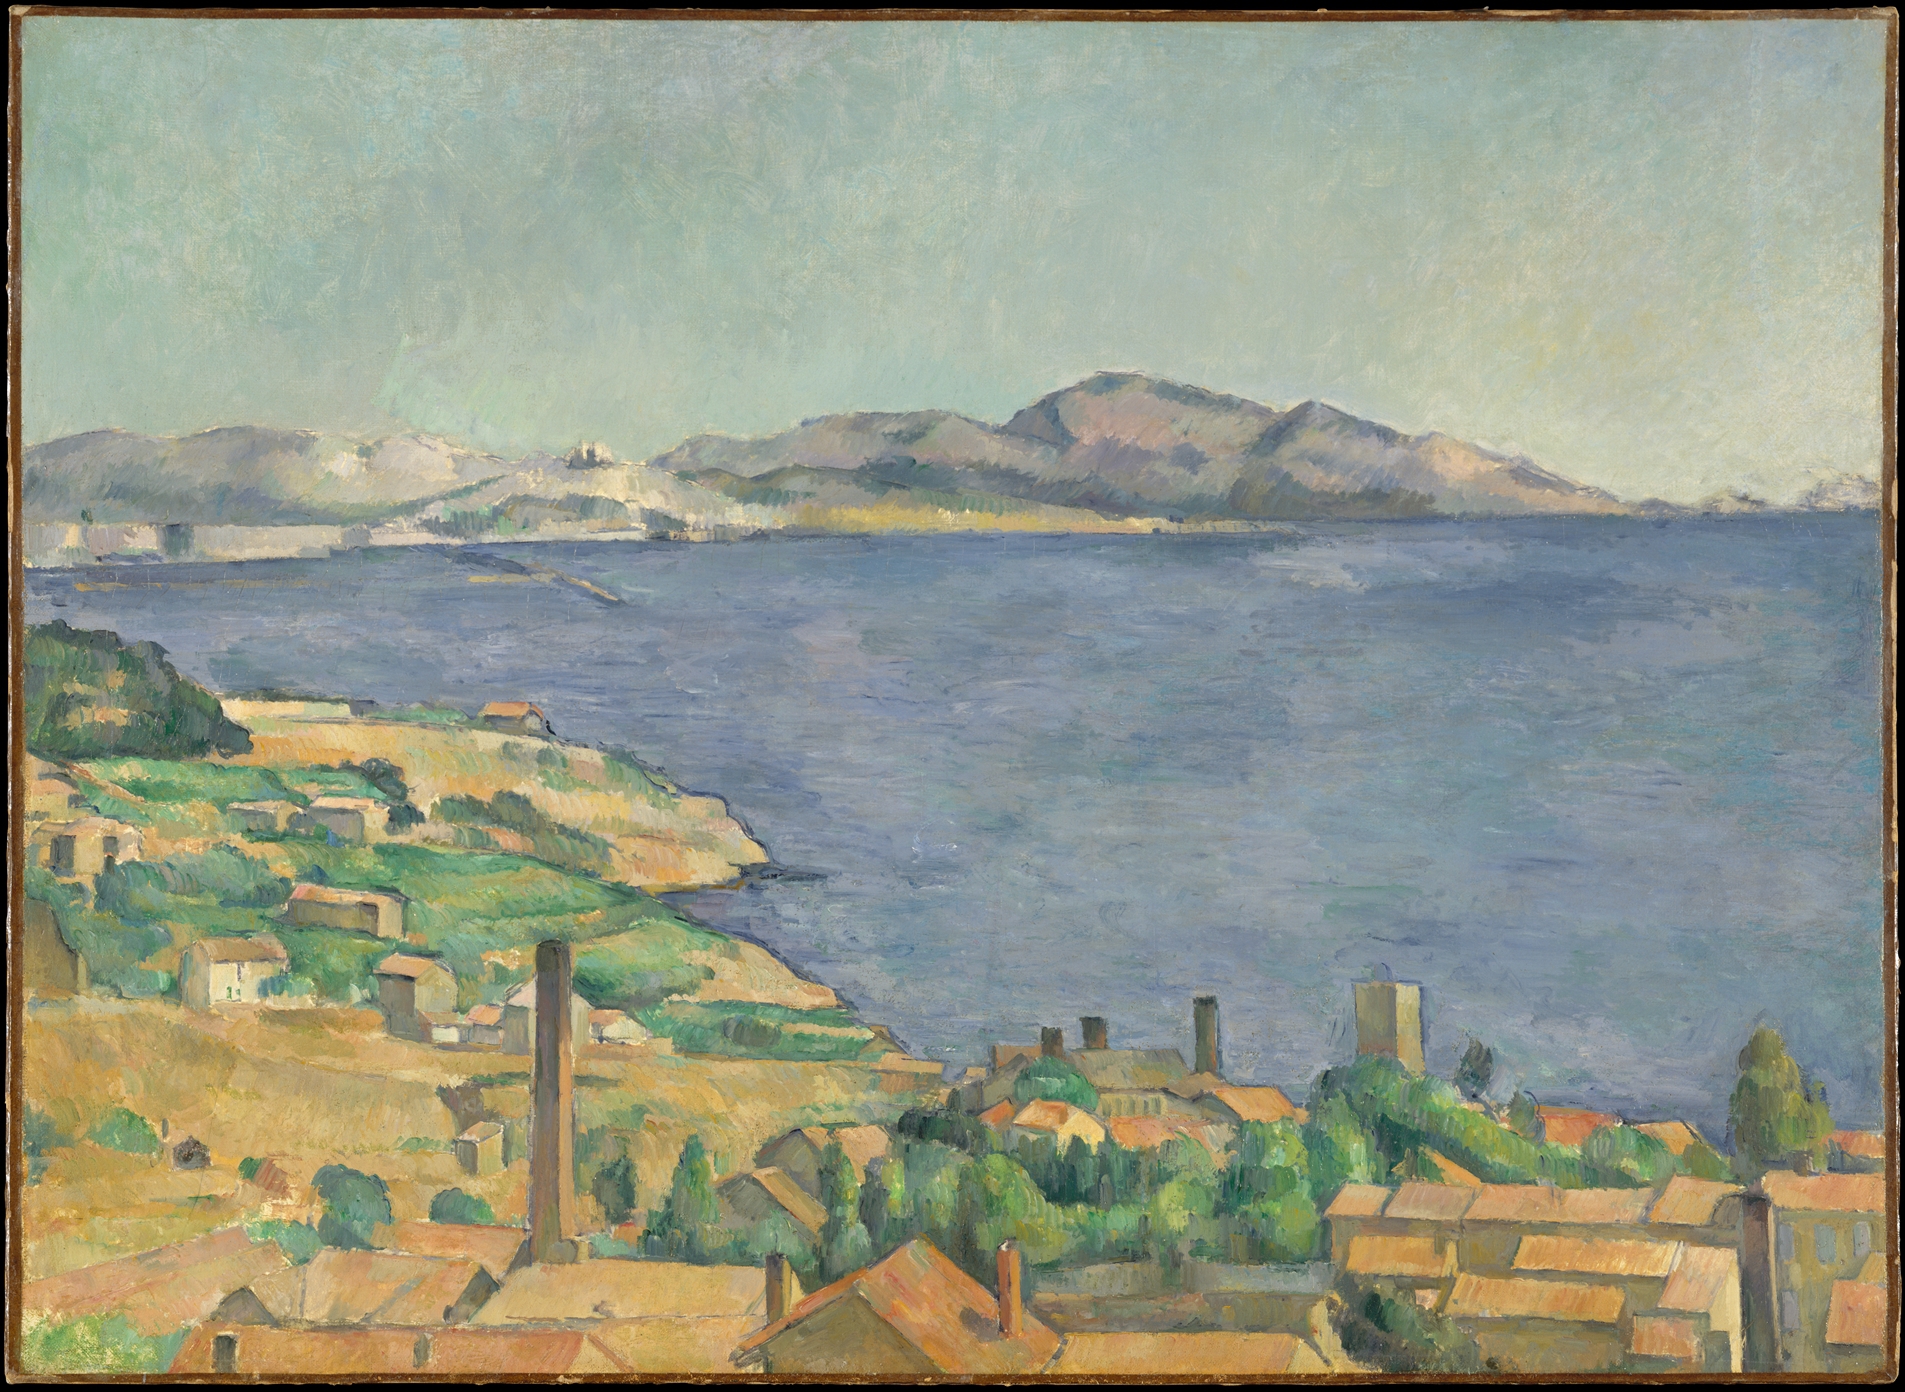 A marseilles-i öböl L'Estaque-ból nézve by Paul Cézanne - 1885 körül - 73 × 100,3 cm 